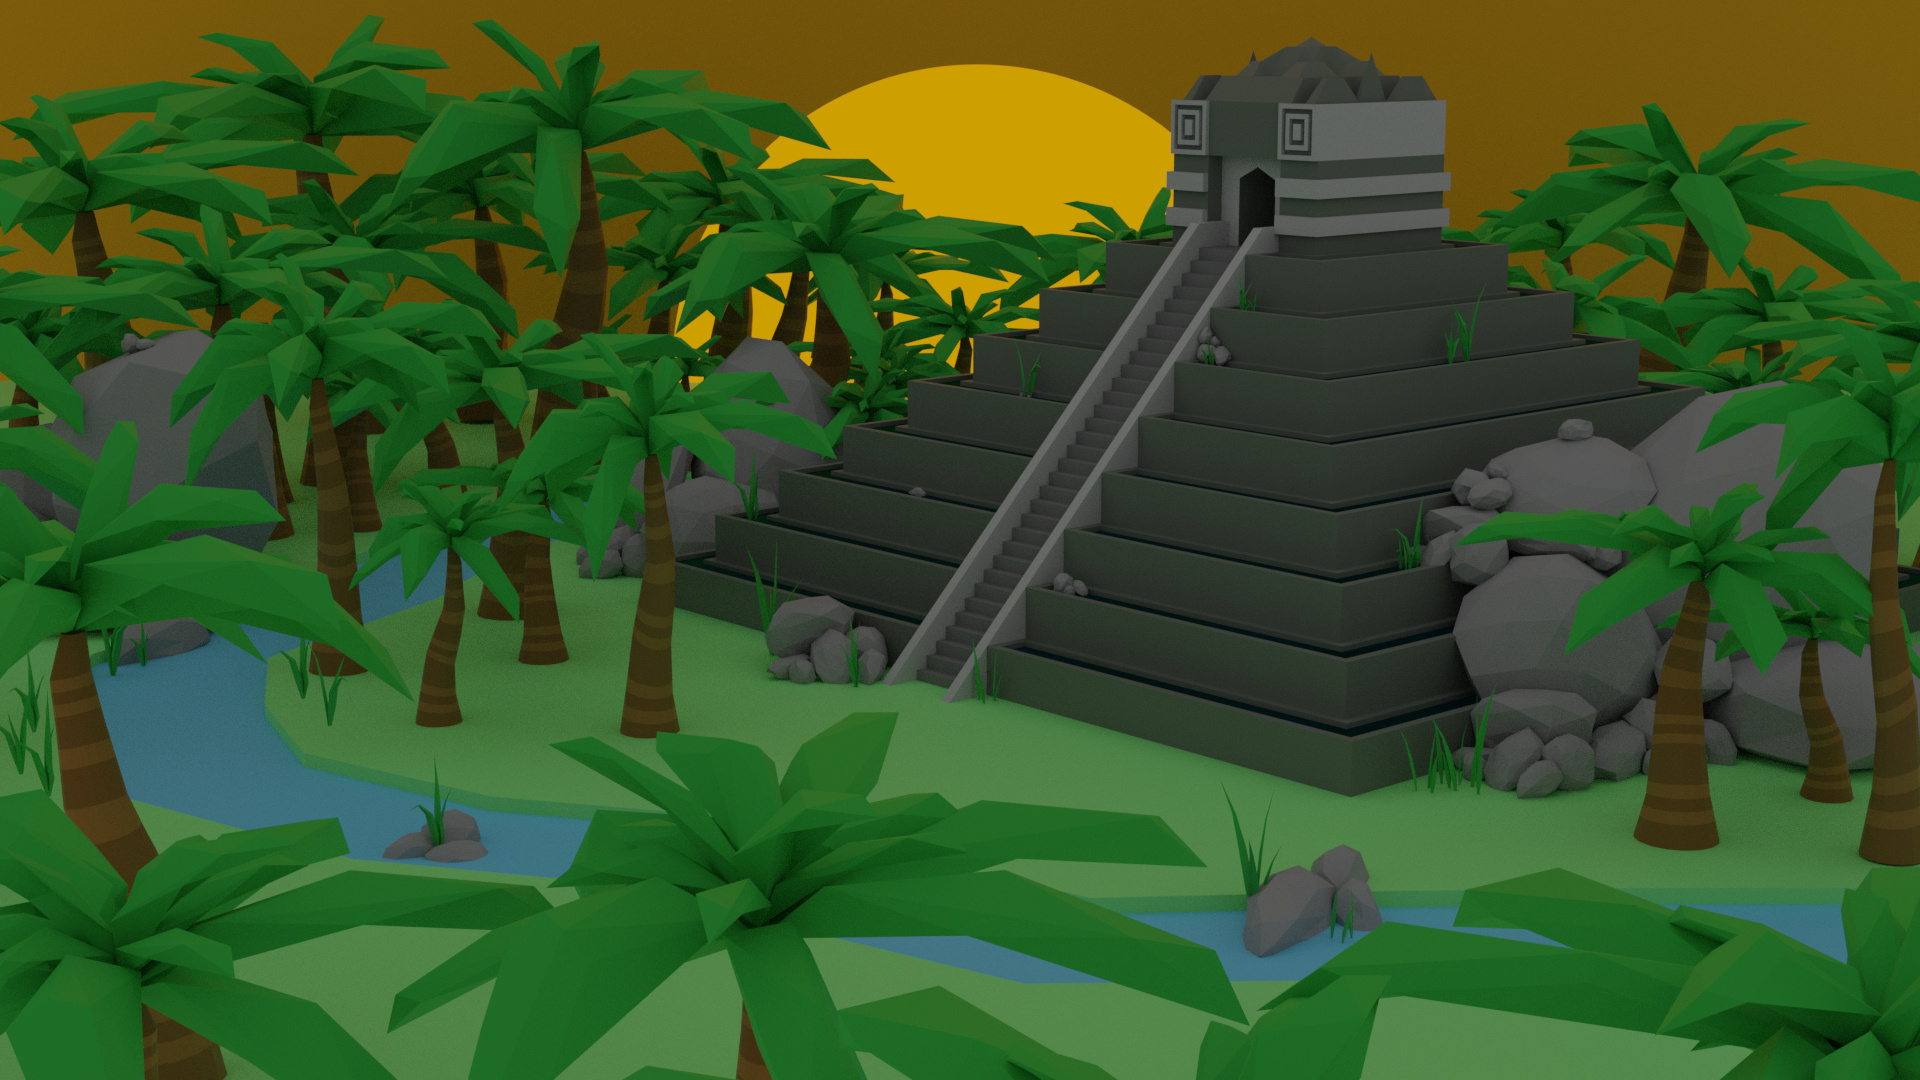 MayanPyramidCycles